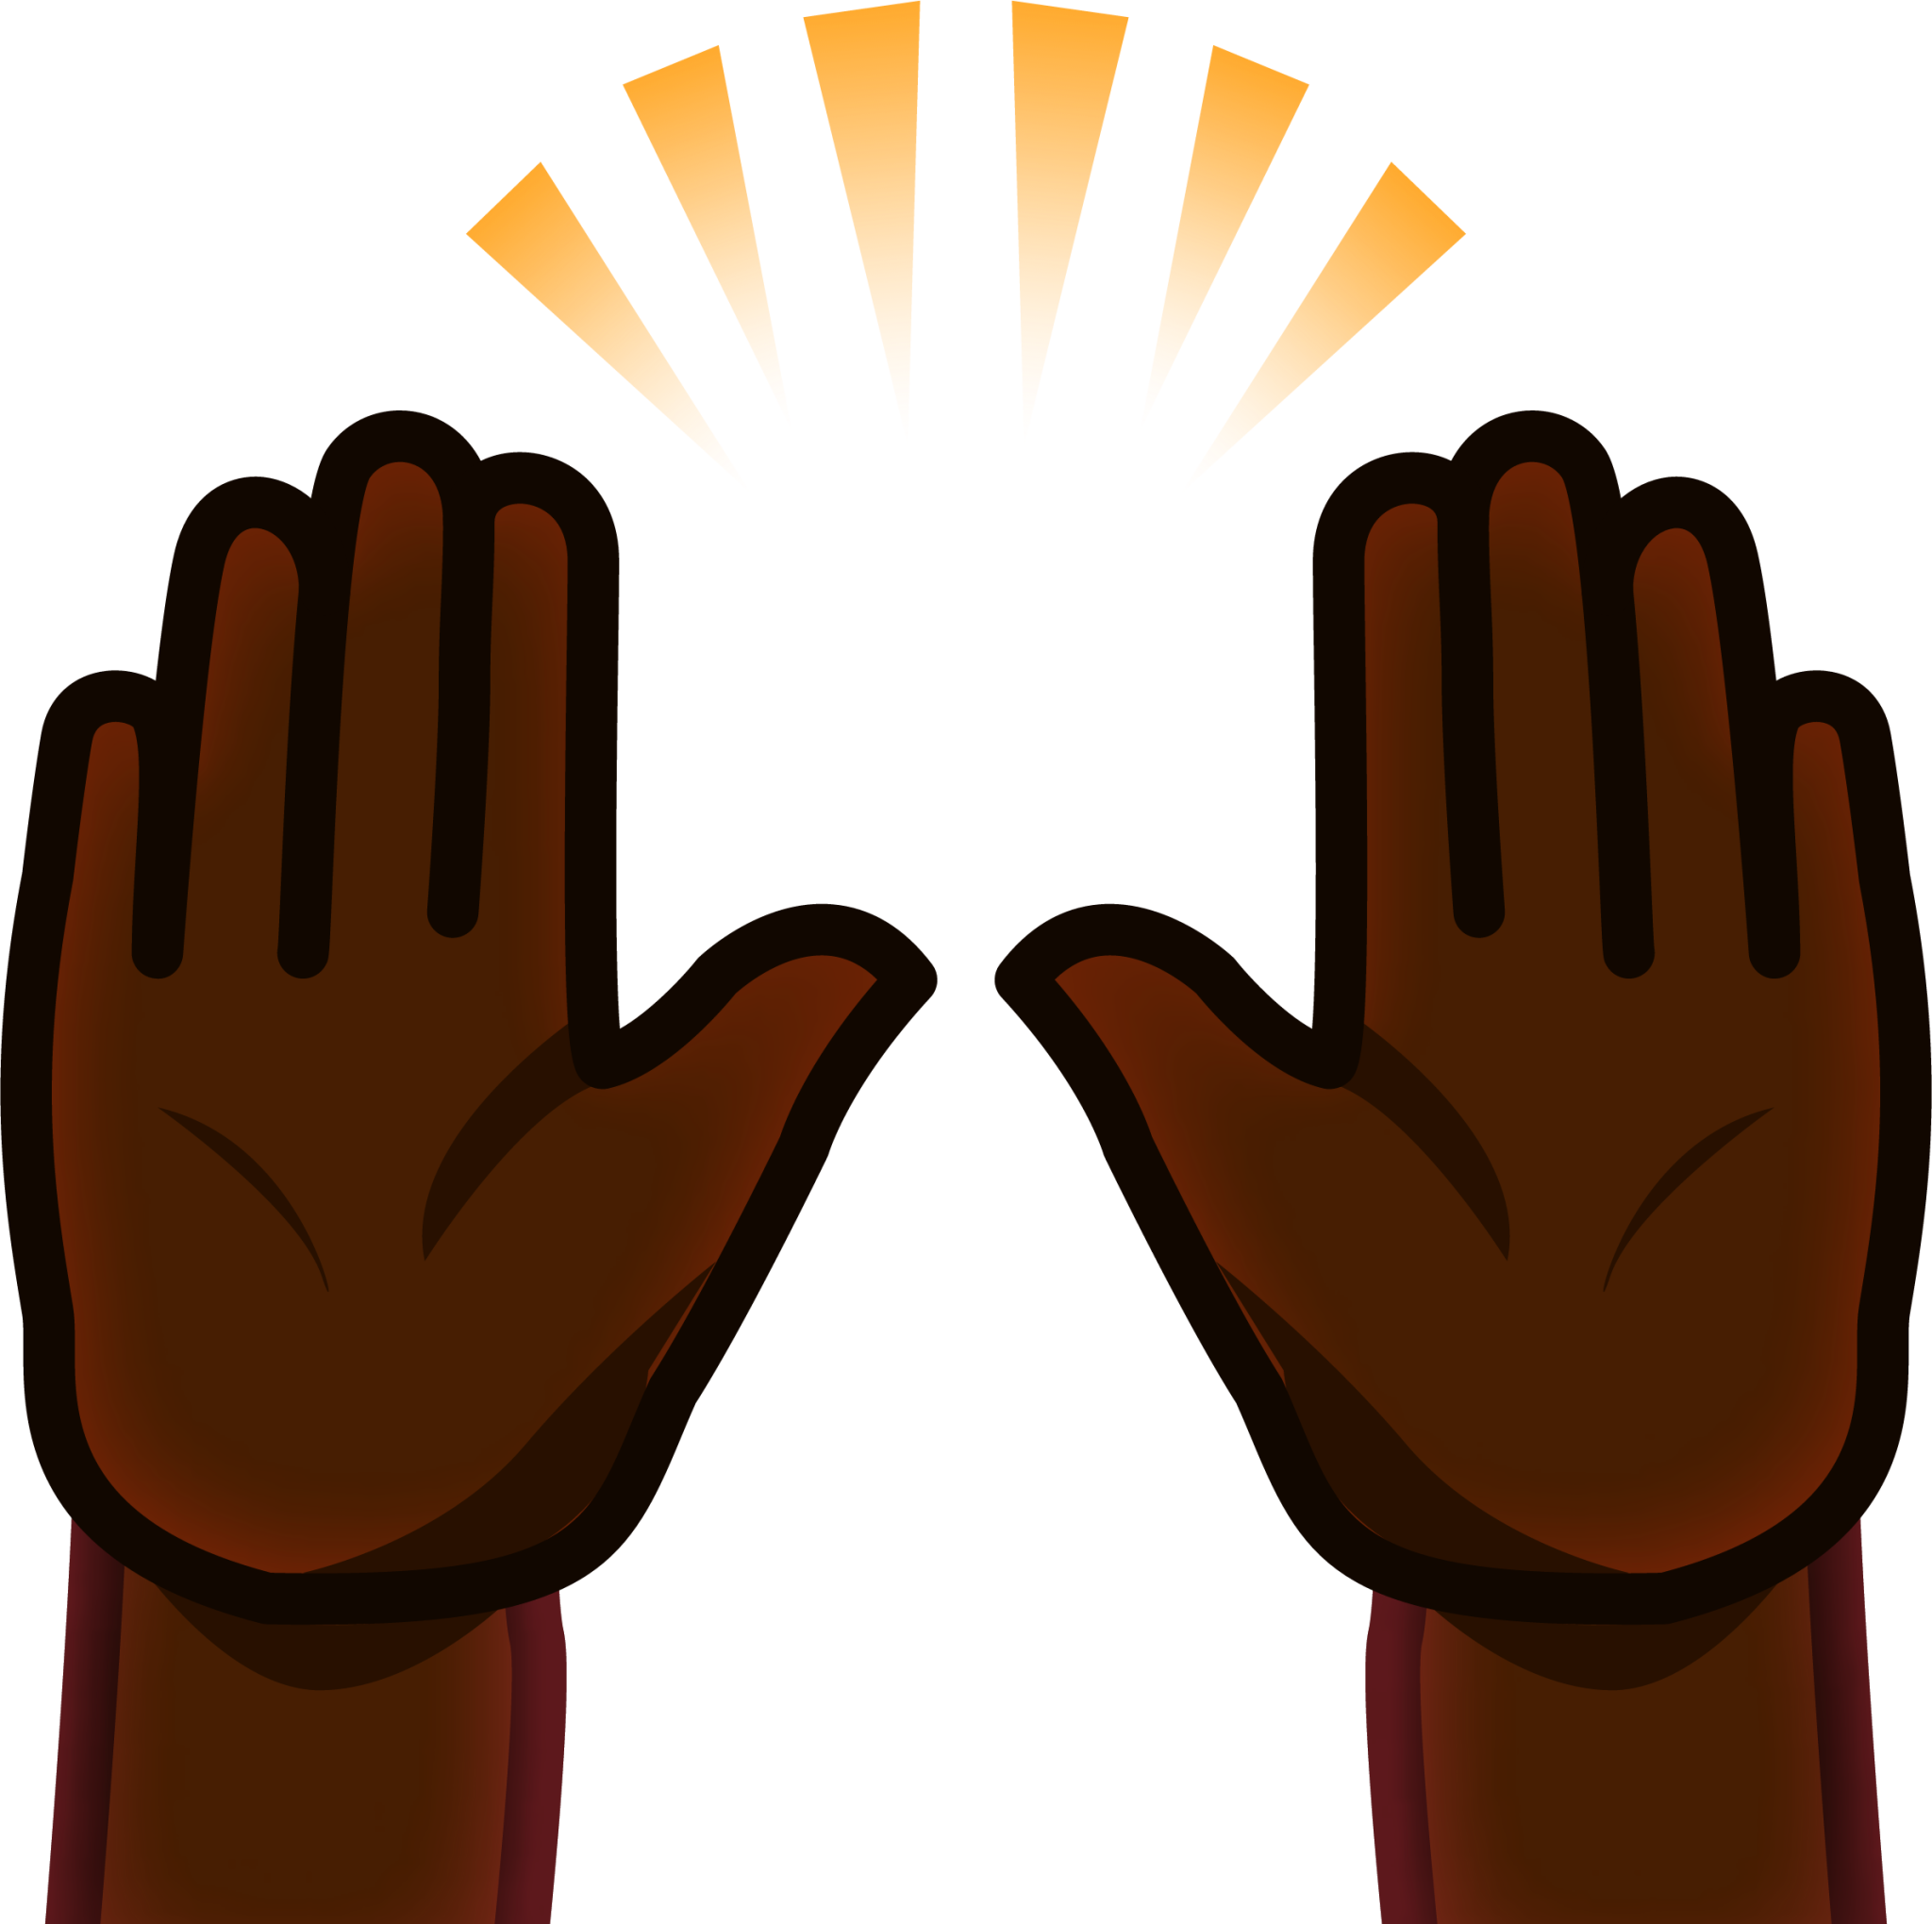 praise hands emoji